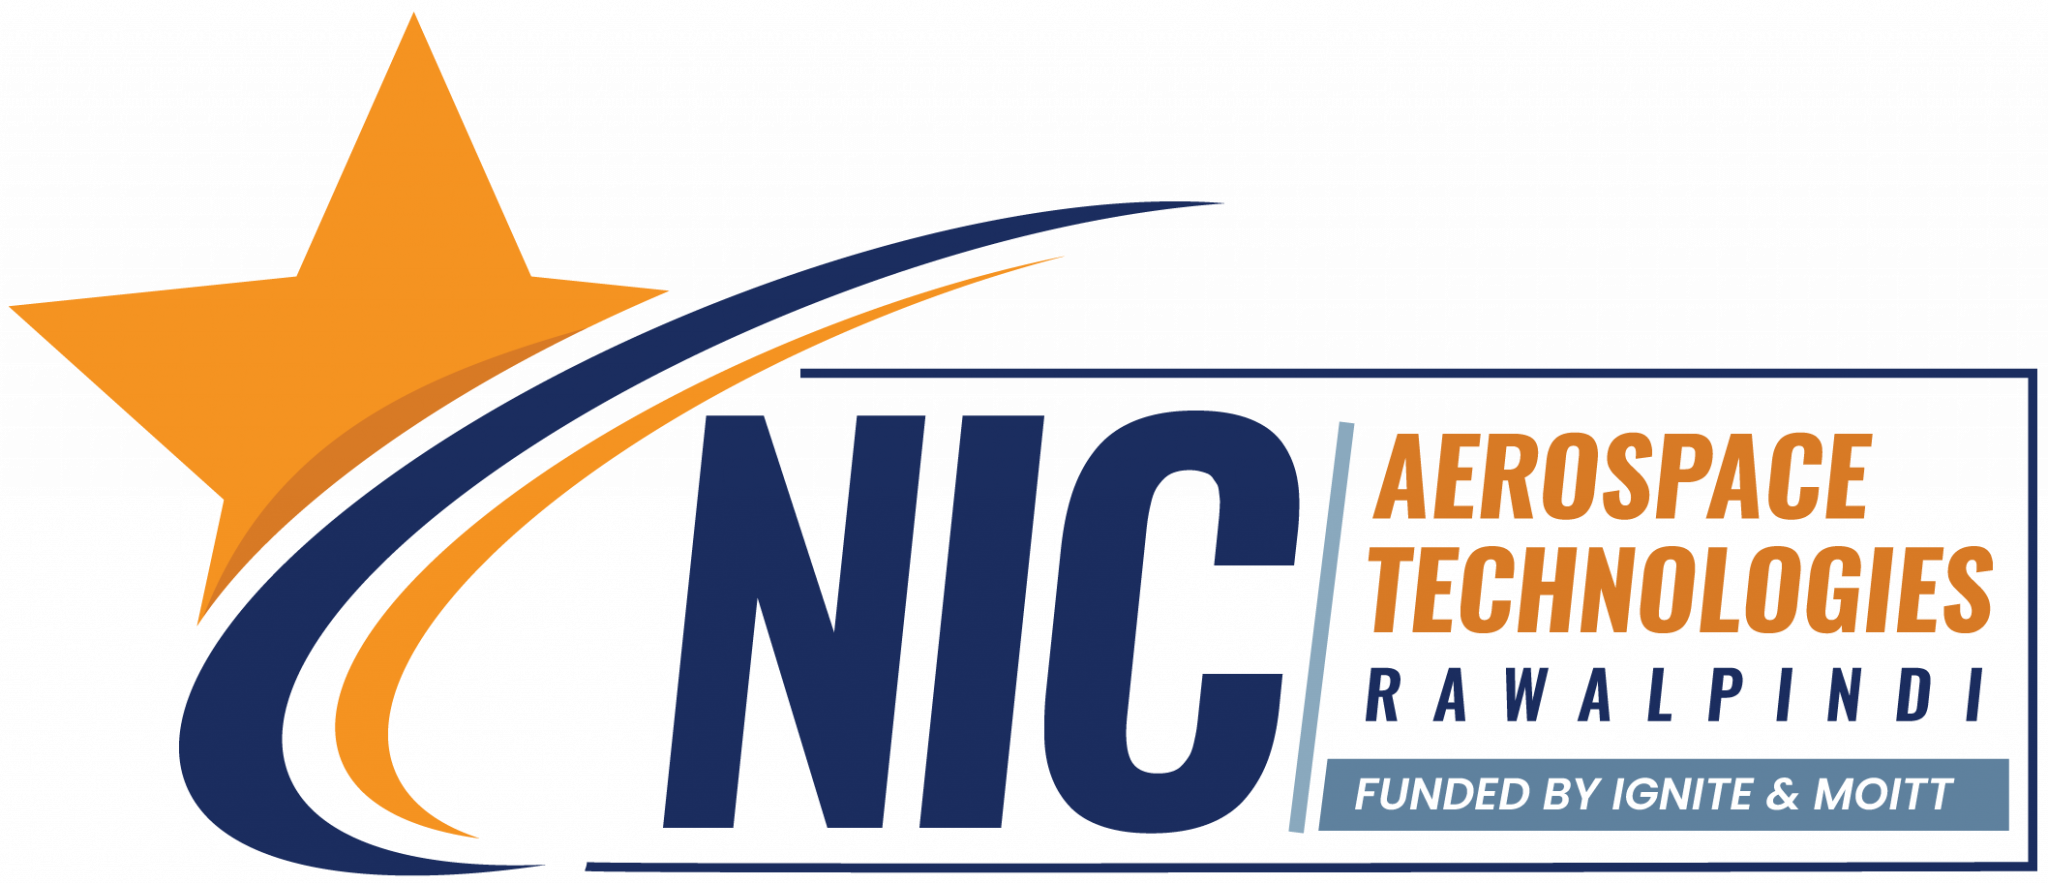 nicat-logo